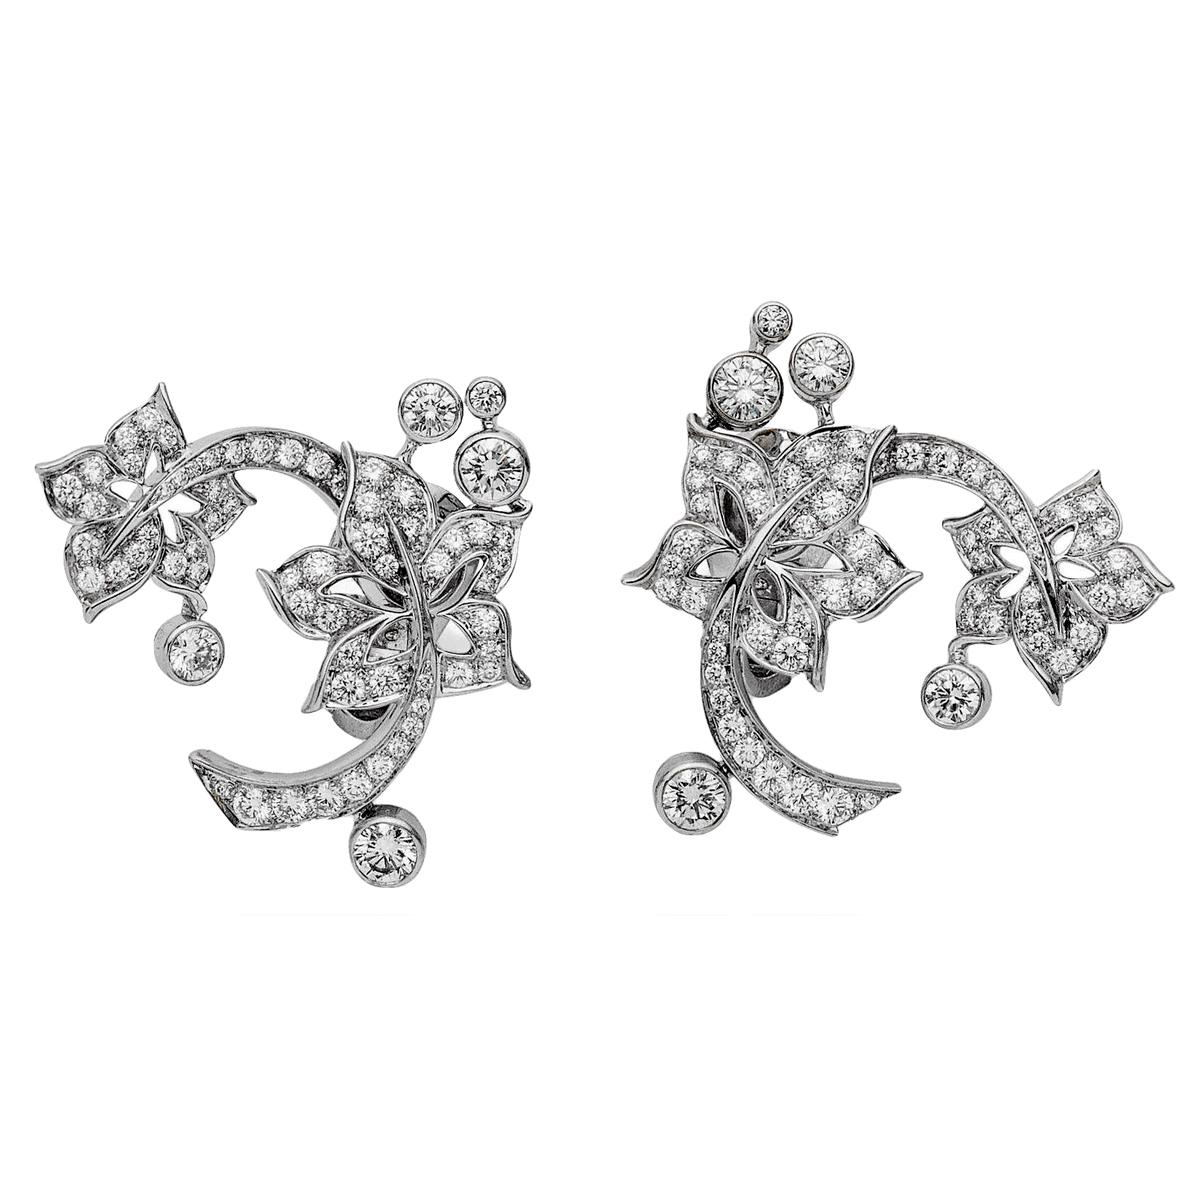 Un incroyable ensemble de boucles d'oreilles en or blanc diamantées Van Cleef & Arpels, les boucles d'oreilles présentent un motif floral réalisé en or blanc 18k et sont serties de 2,35ct des plus beaux diamants ronds de taille brillant.